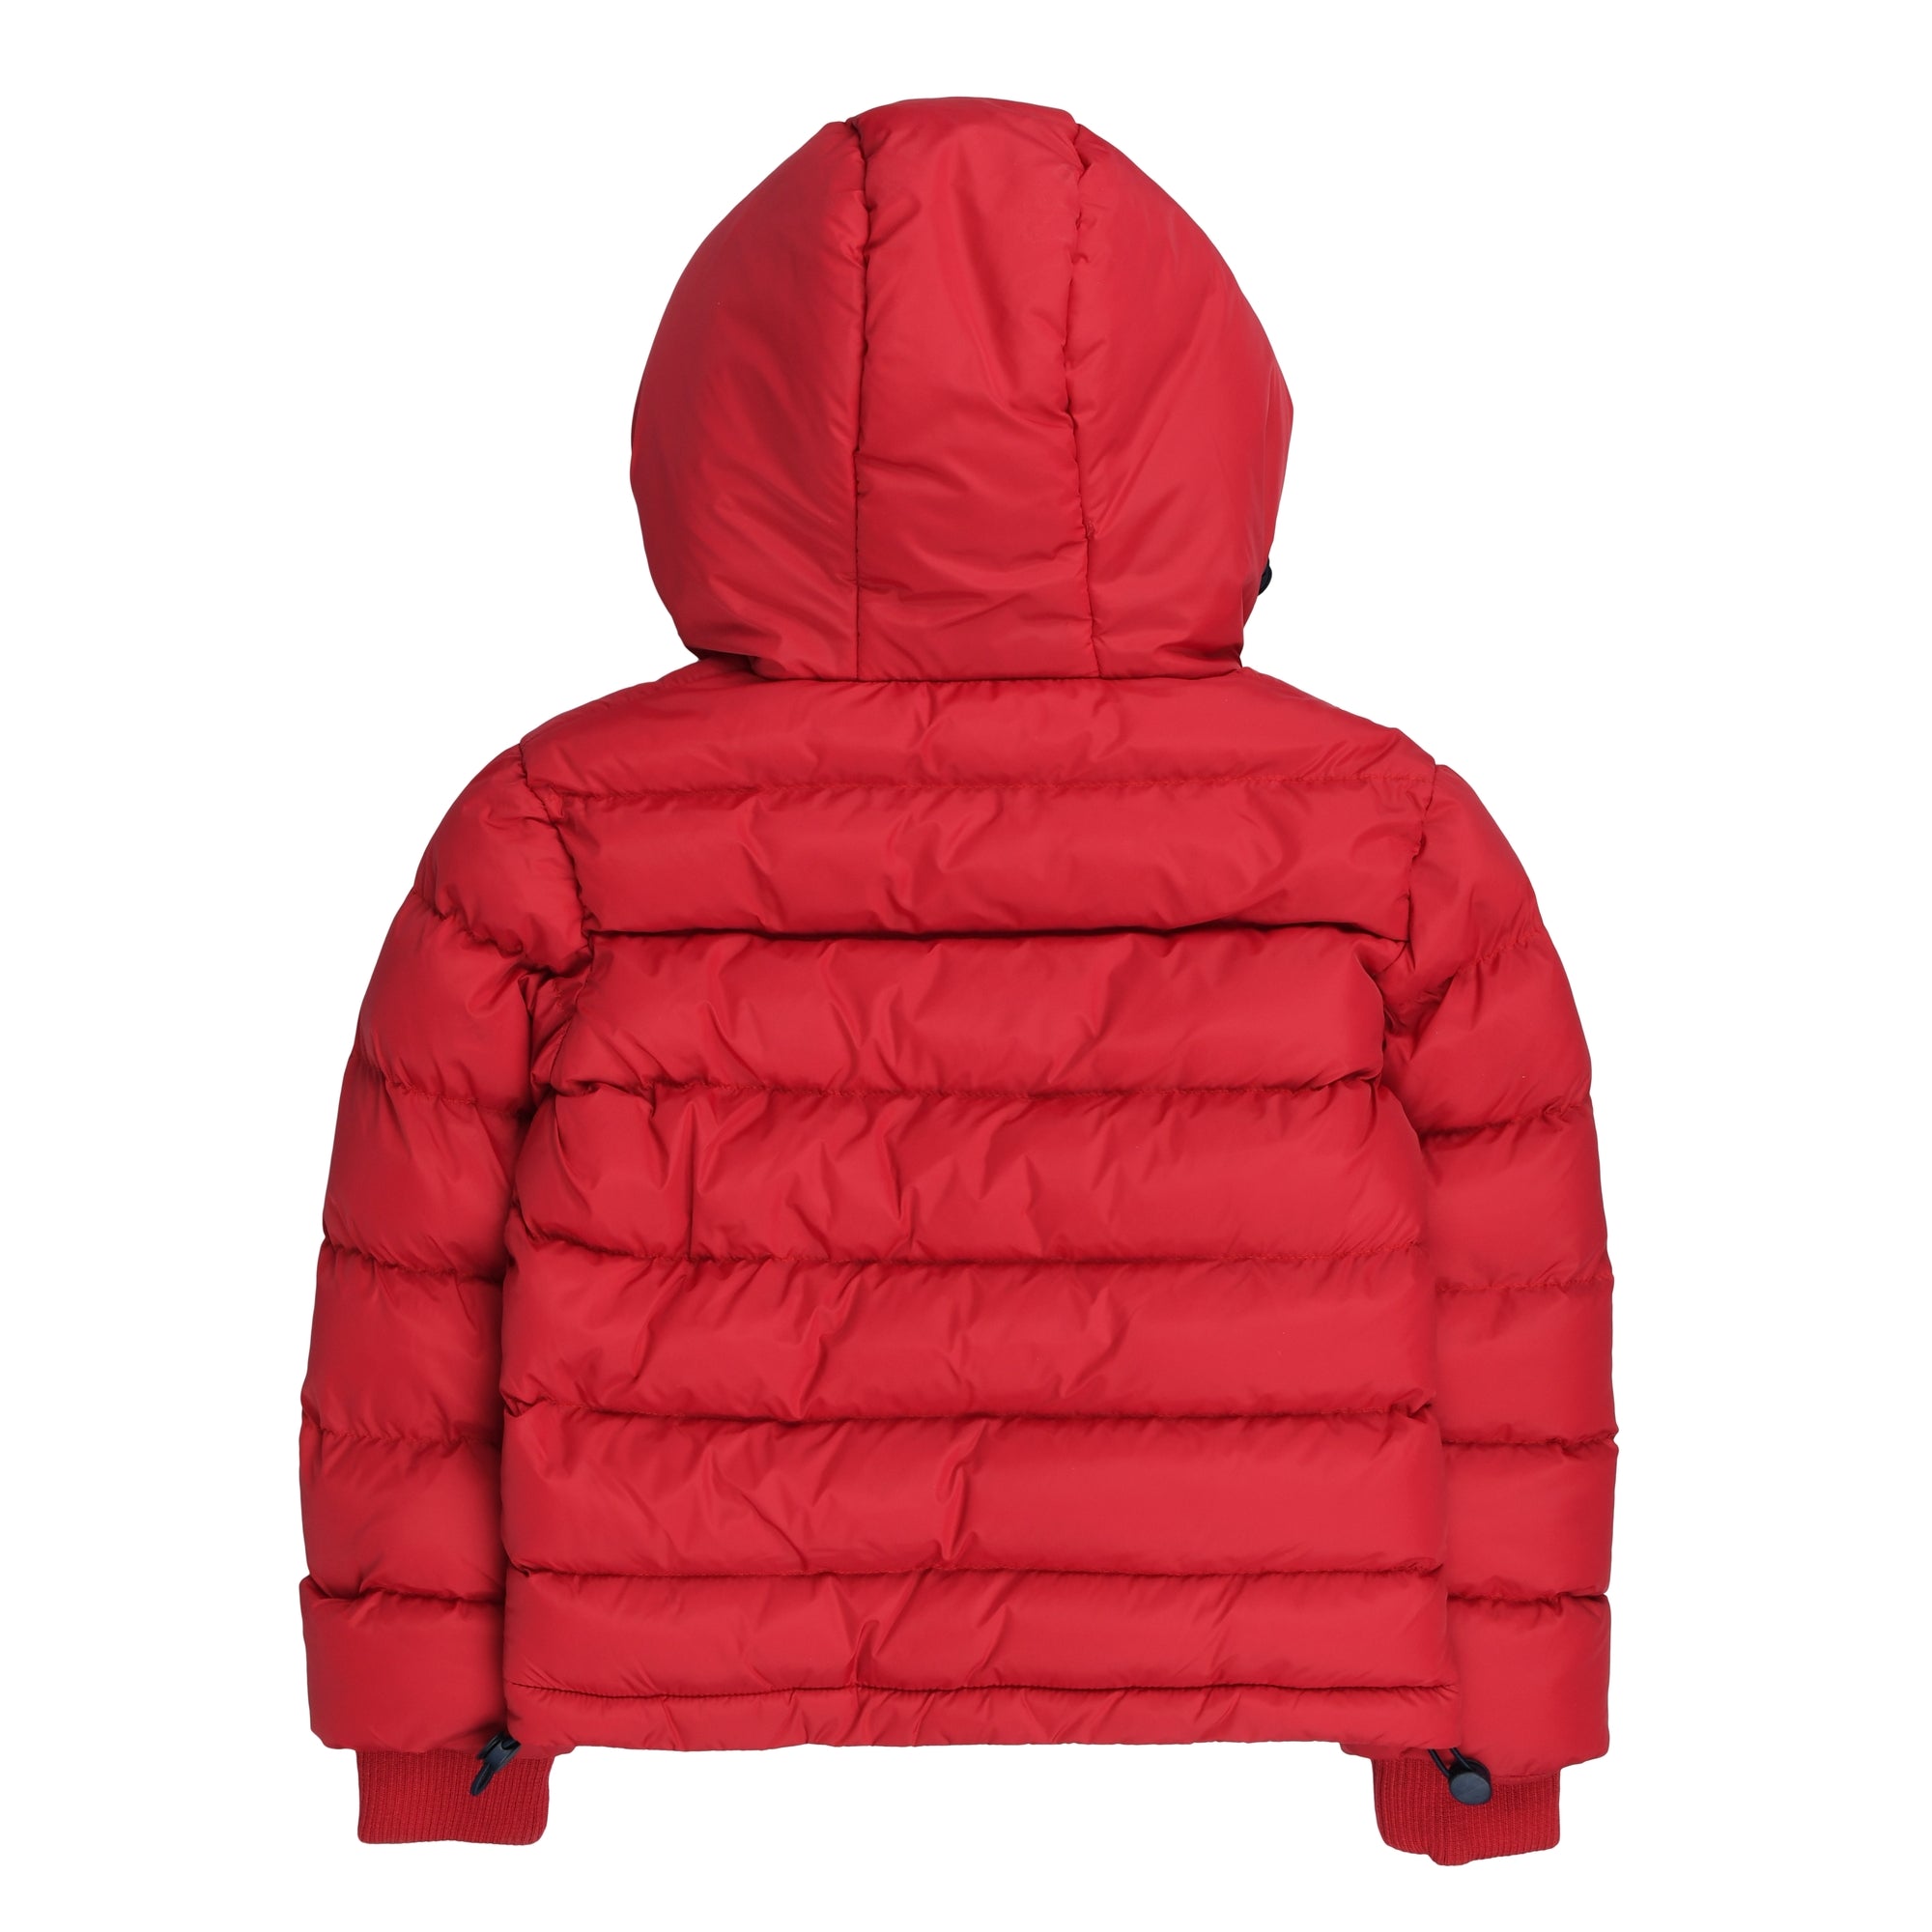 Nylon jacket with hood